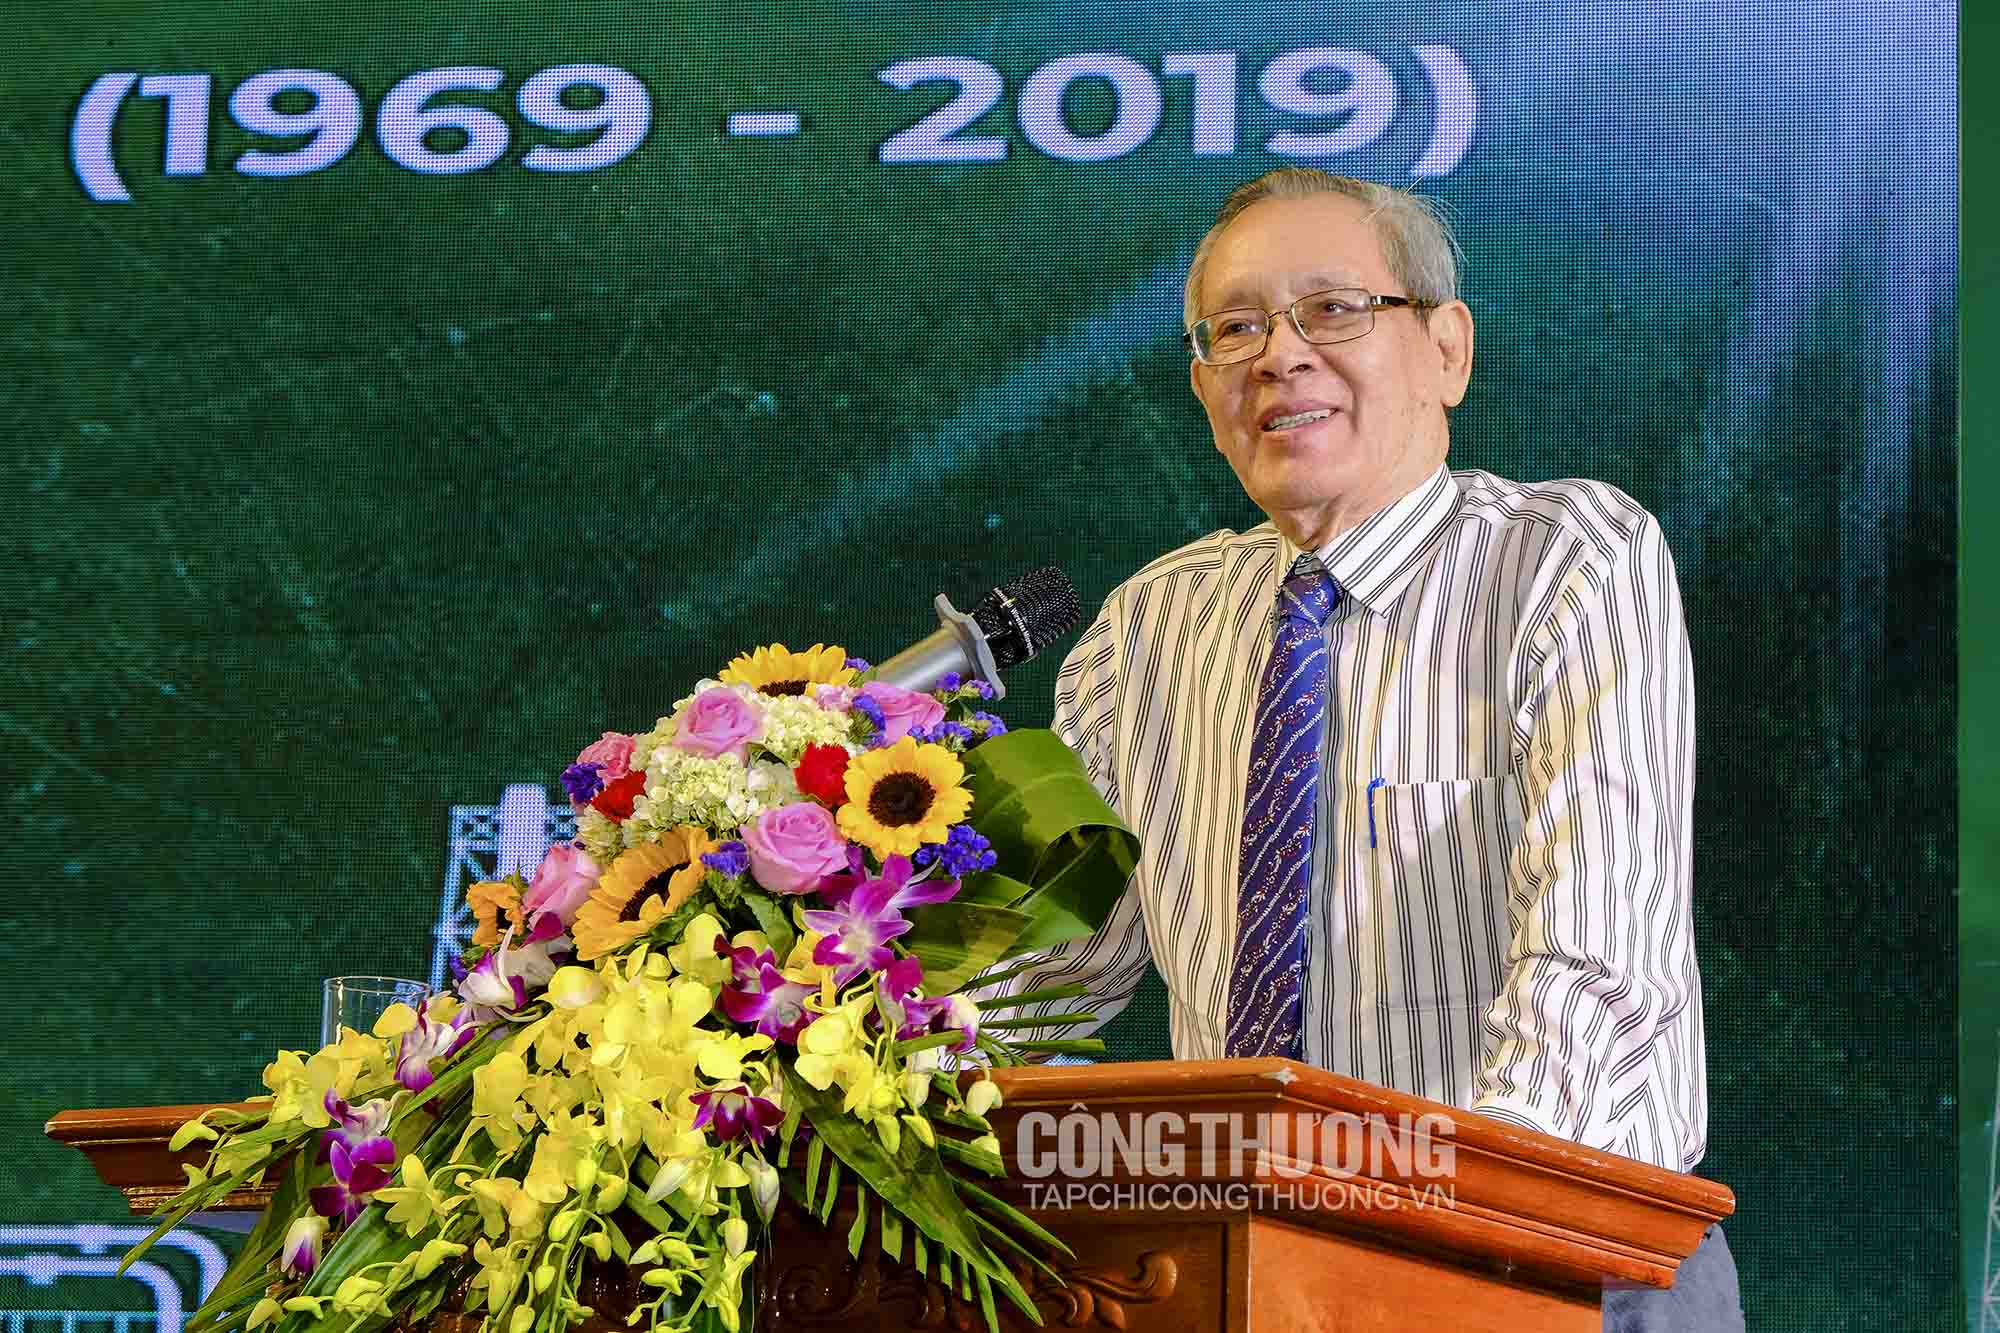 Chủ tịch Hội Hóa học Việt Nam Lê Quốc Khánh bày tỏ chia sẻ với những khó khăn của Vinachem trong bối cảnh mới